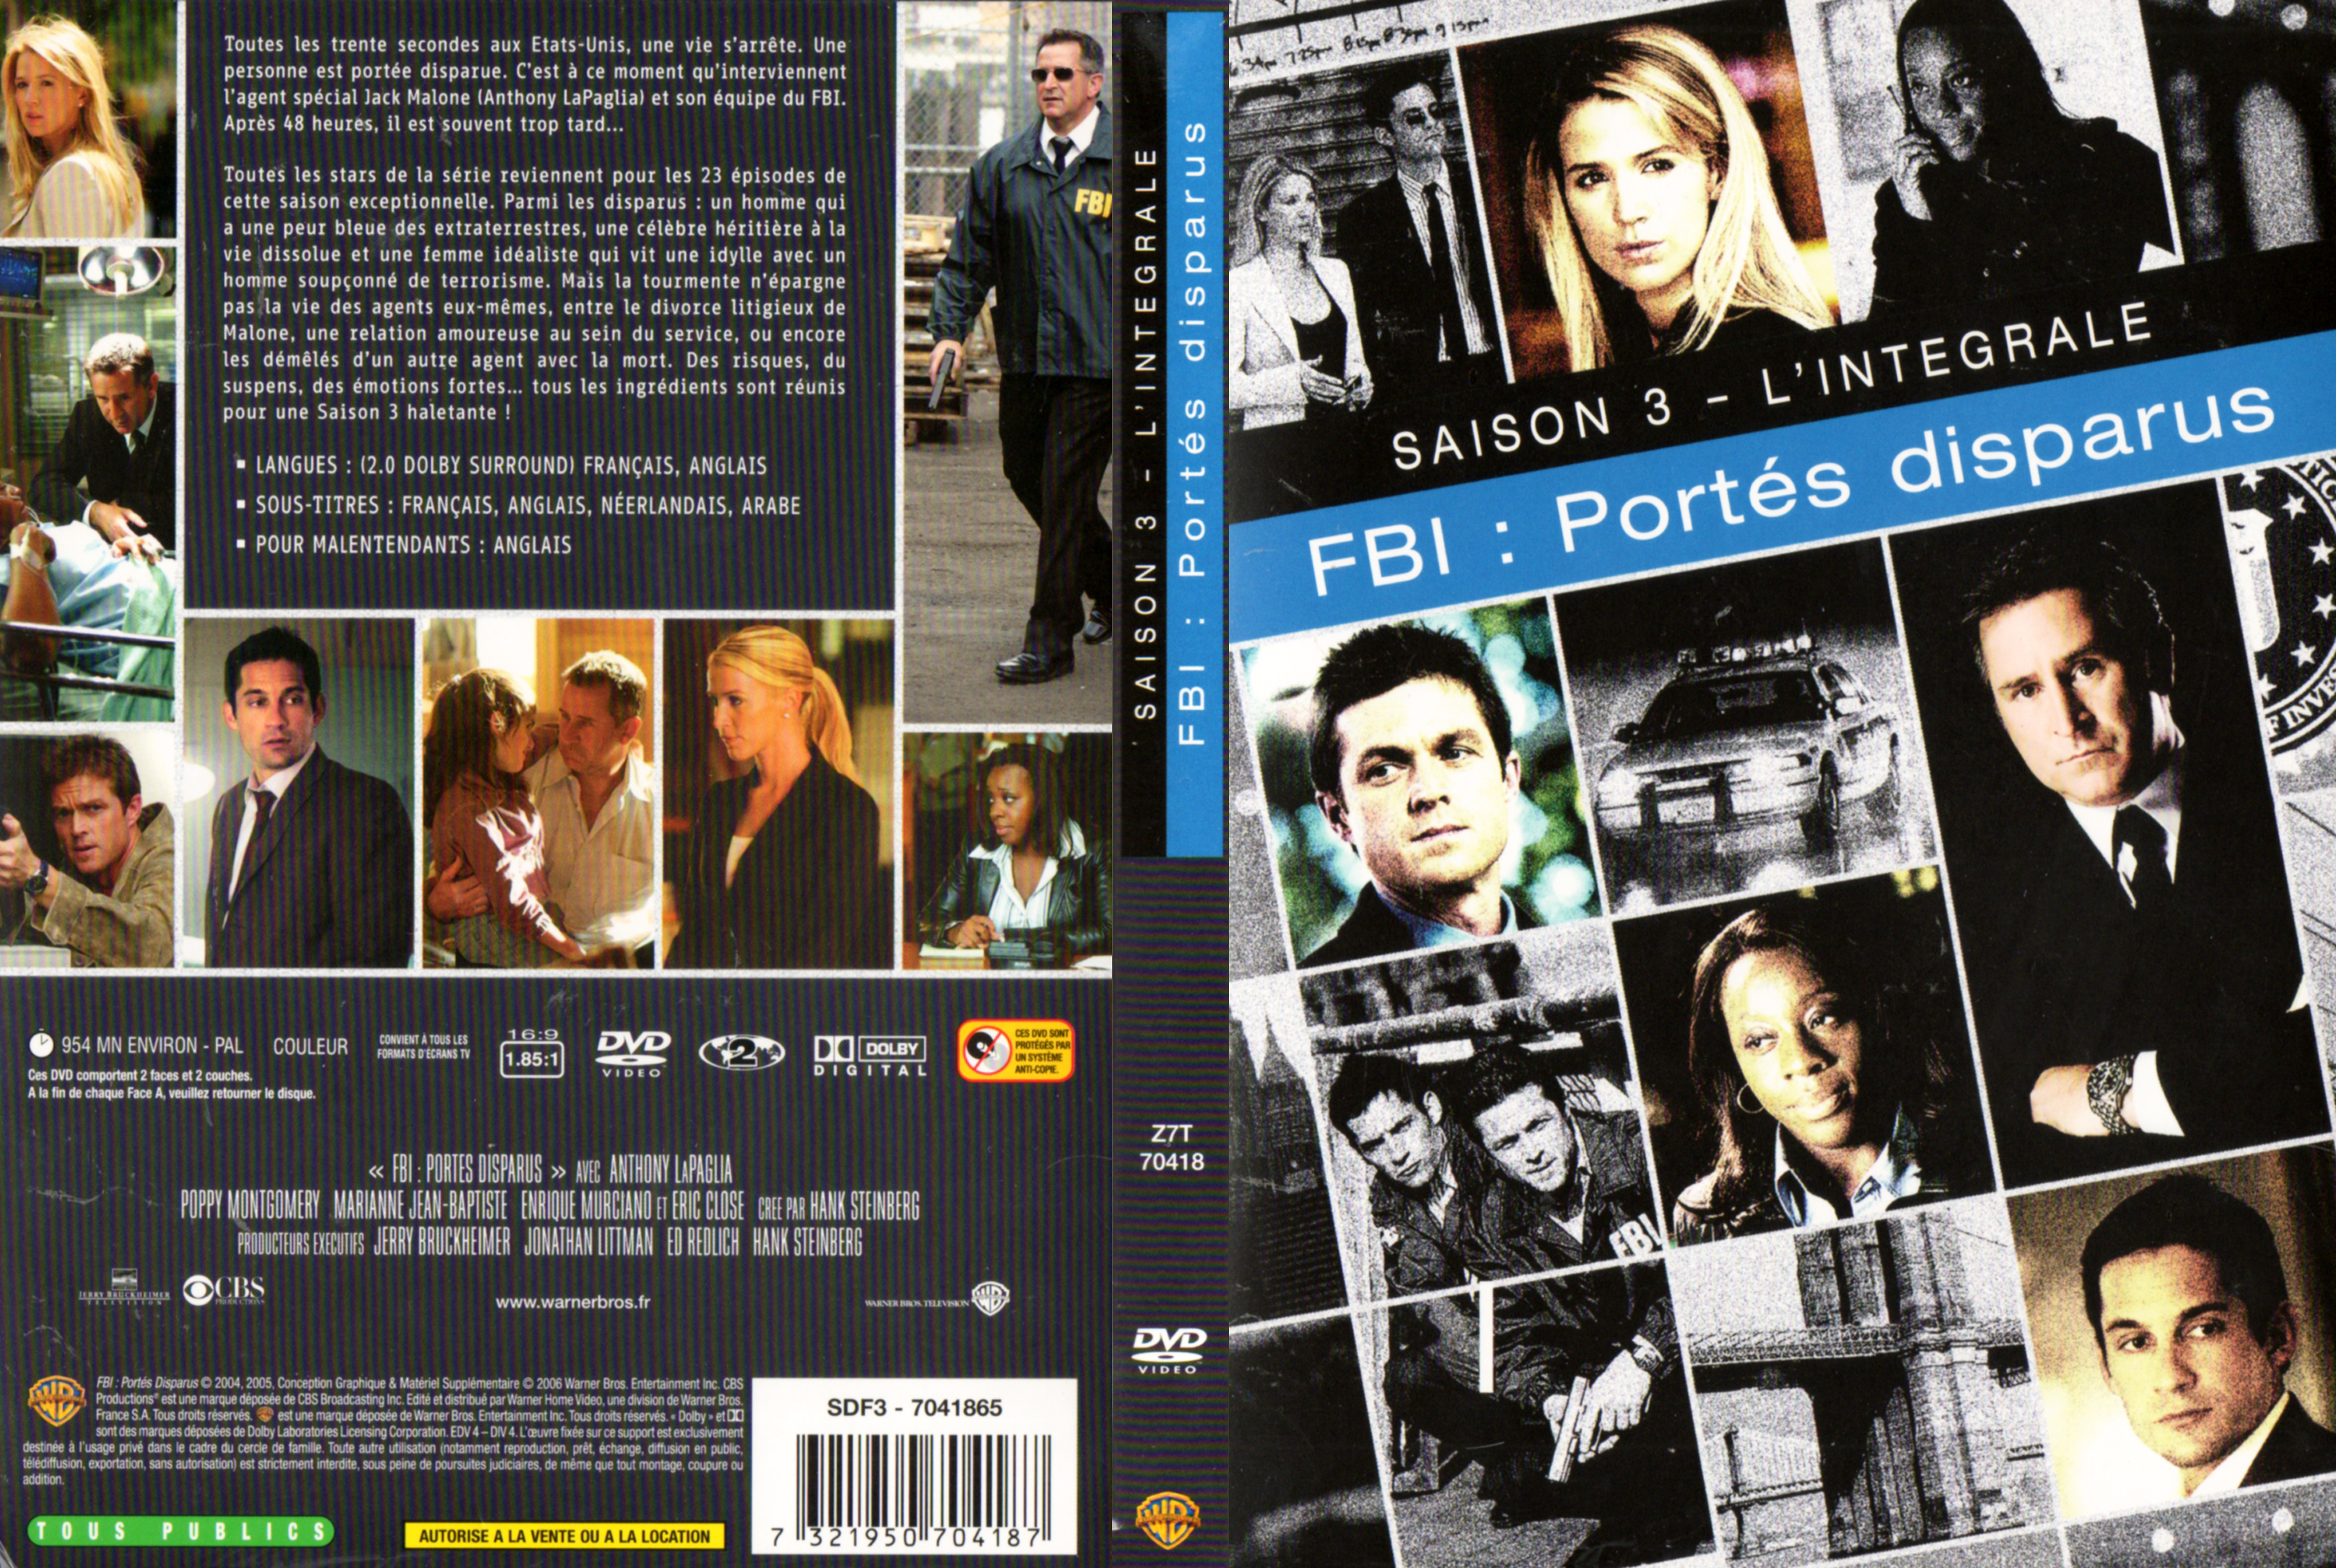 Jaquette DVD FBI portes disparus Saison 3 COFFRET v2